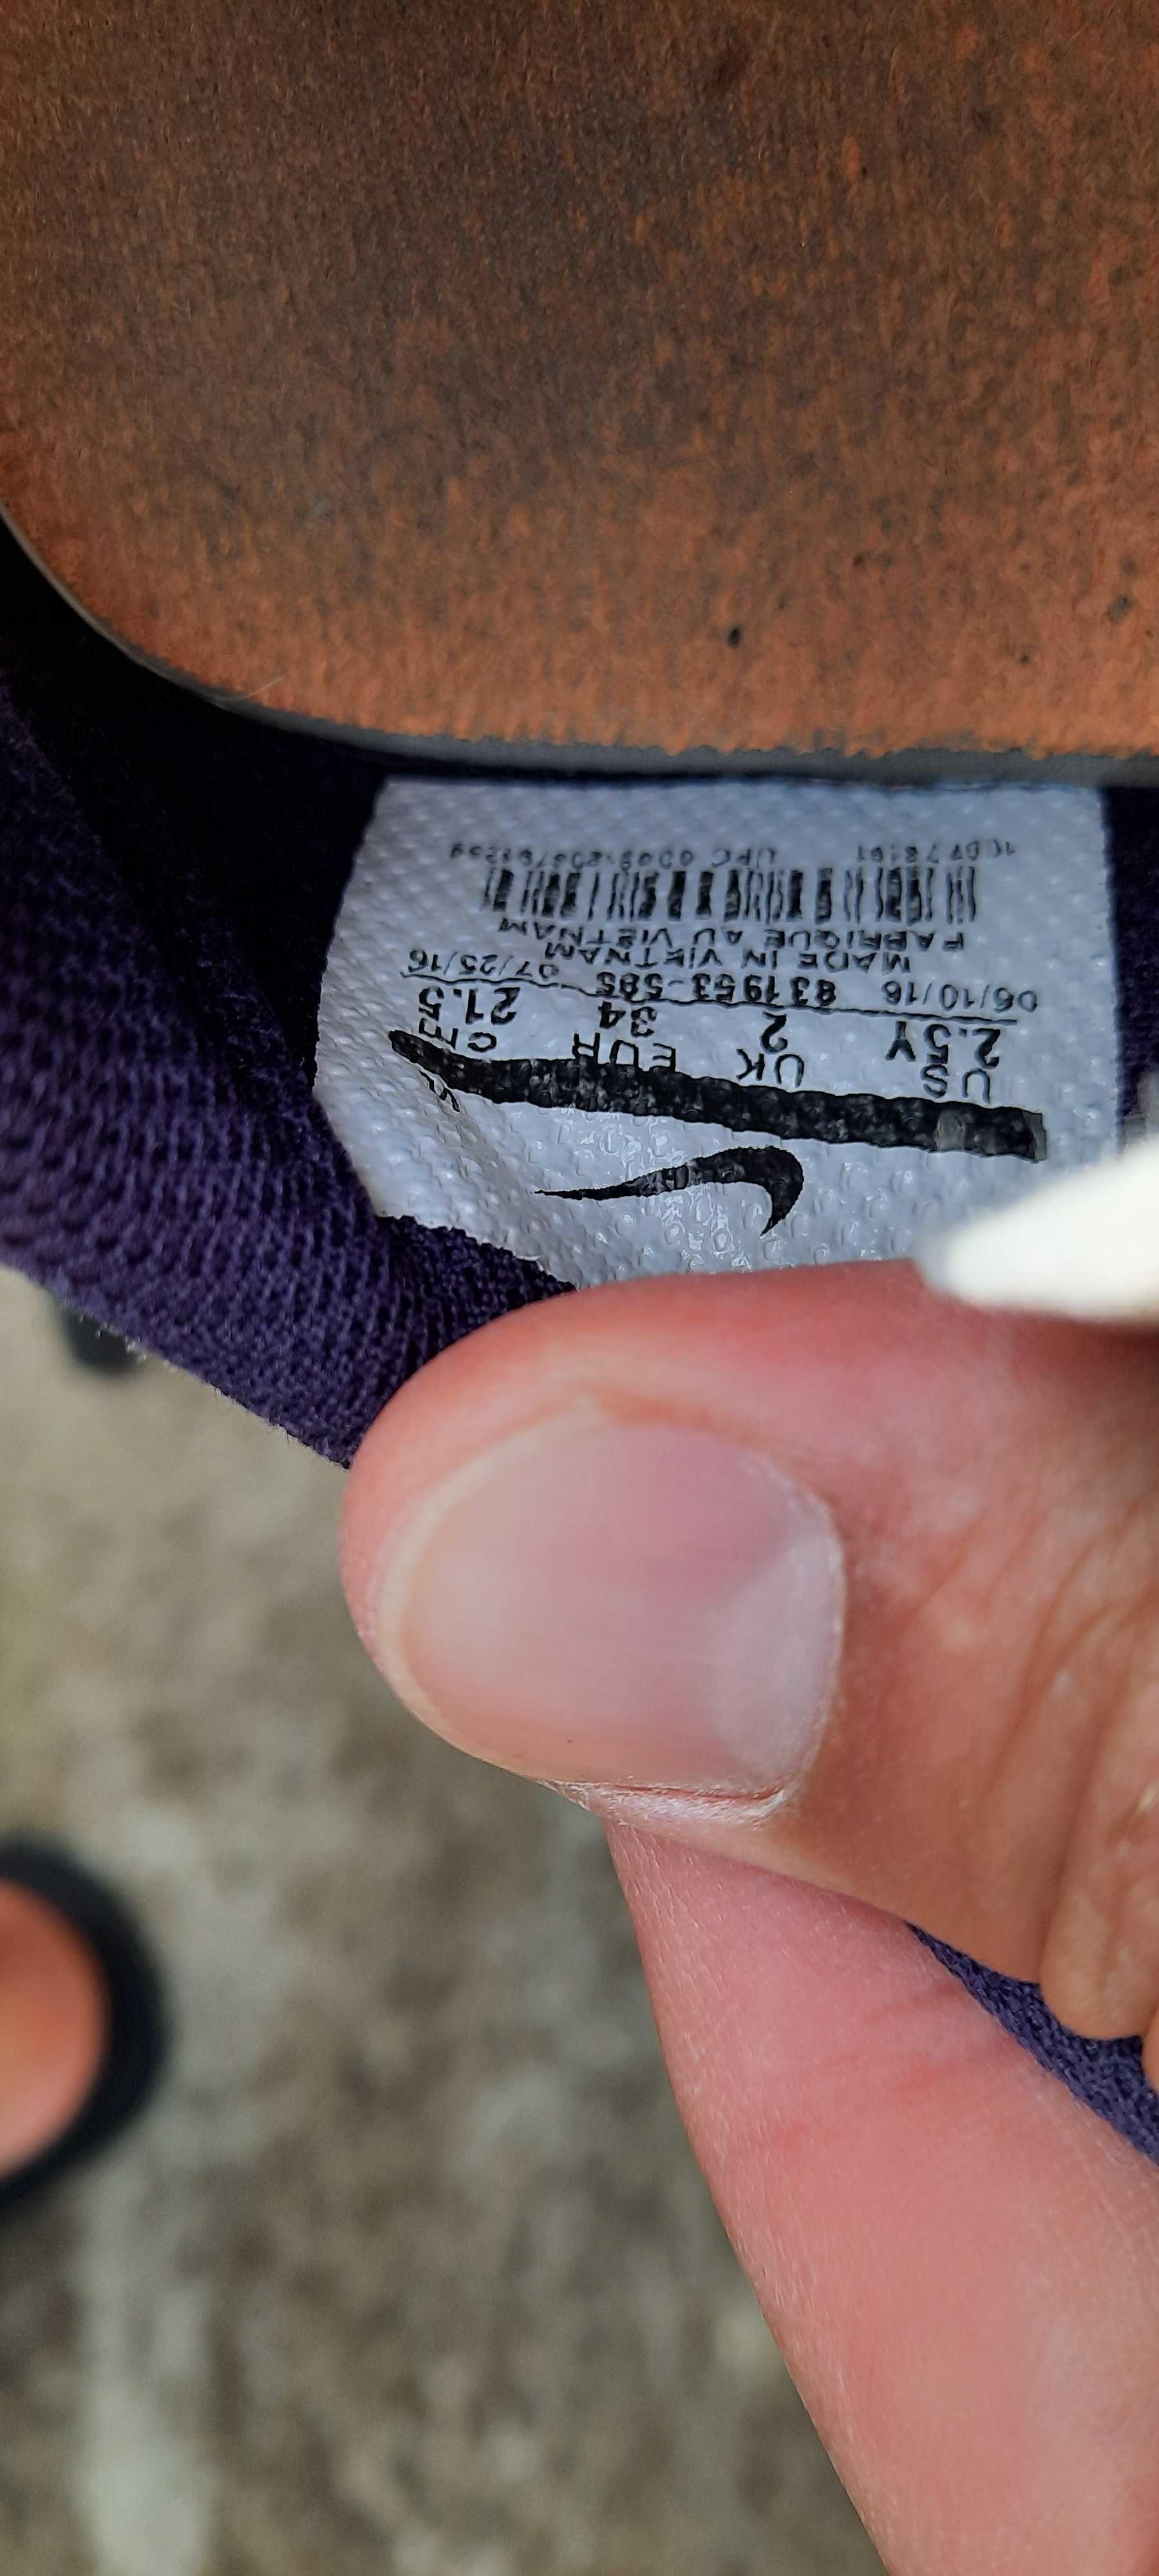 Buty Nike mercurial rozmiar 34